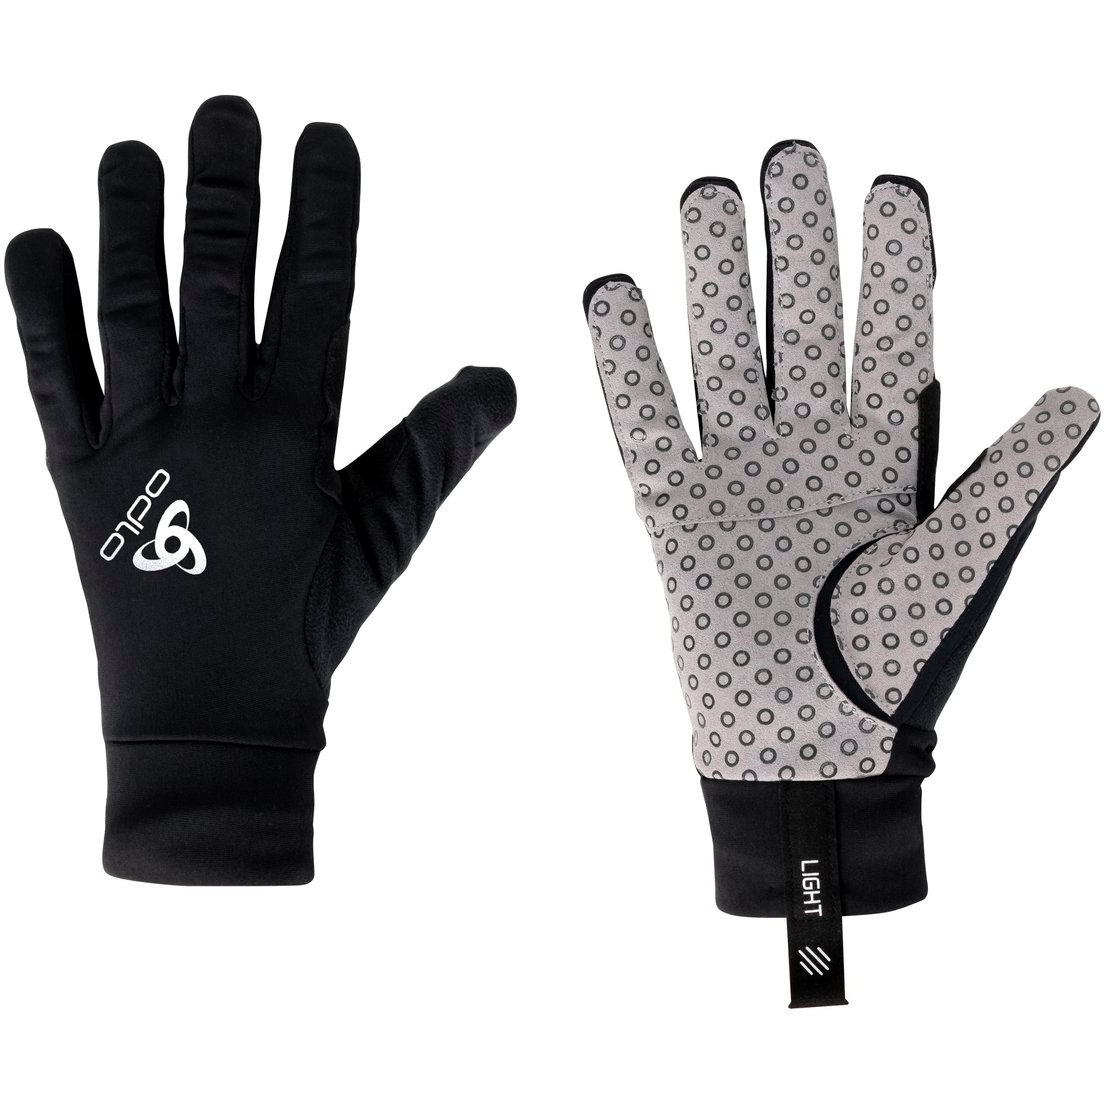 Produktbild von Odlo AEOLUS LIGHT Handschuhe - schwarz